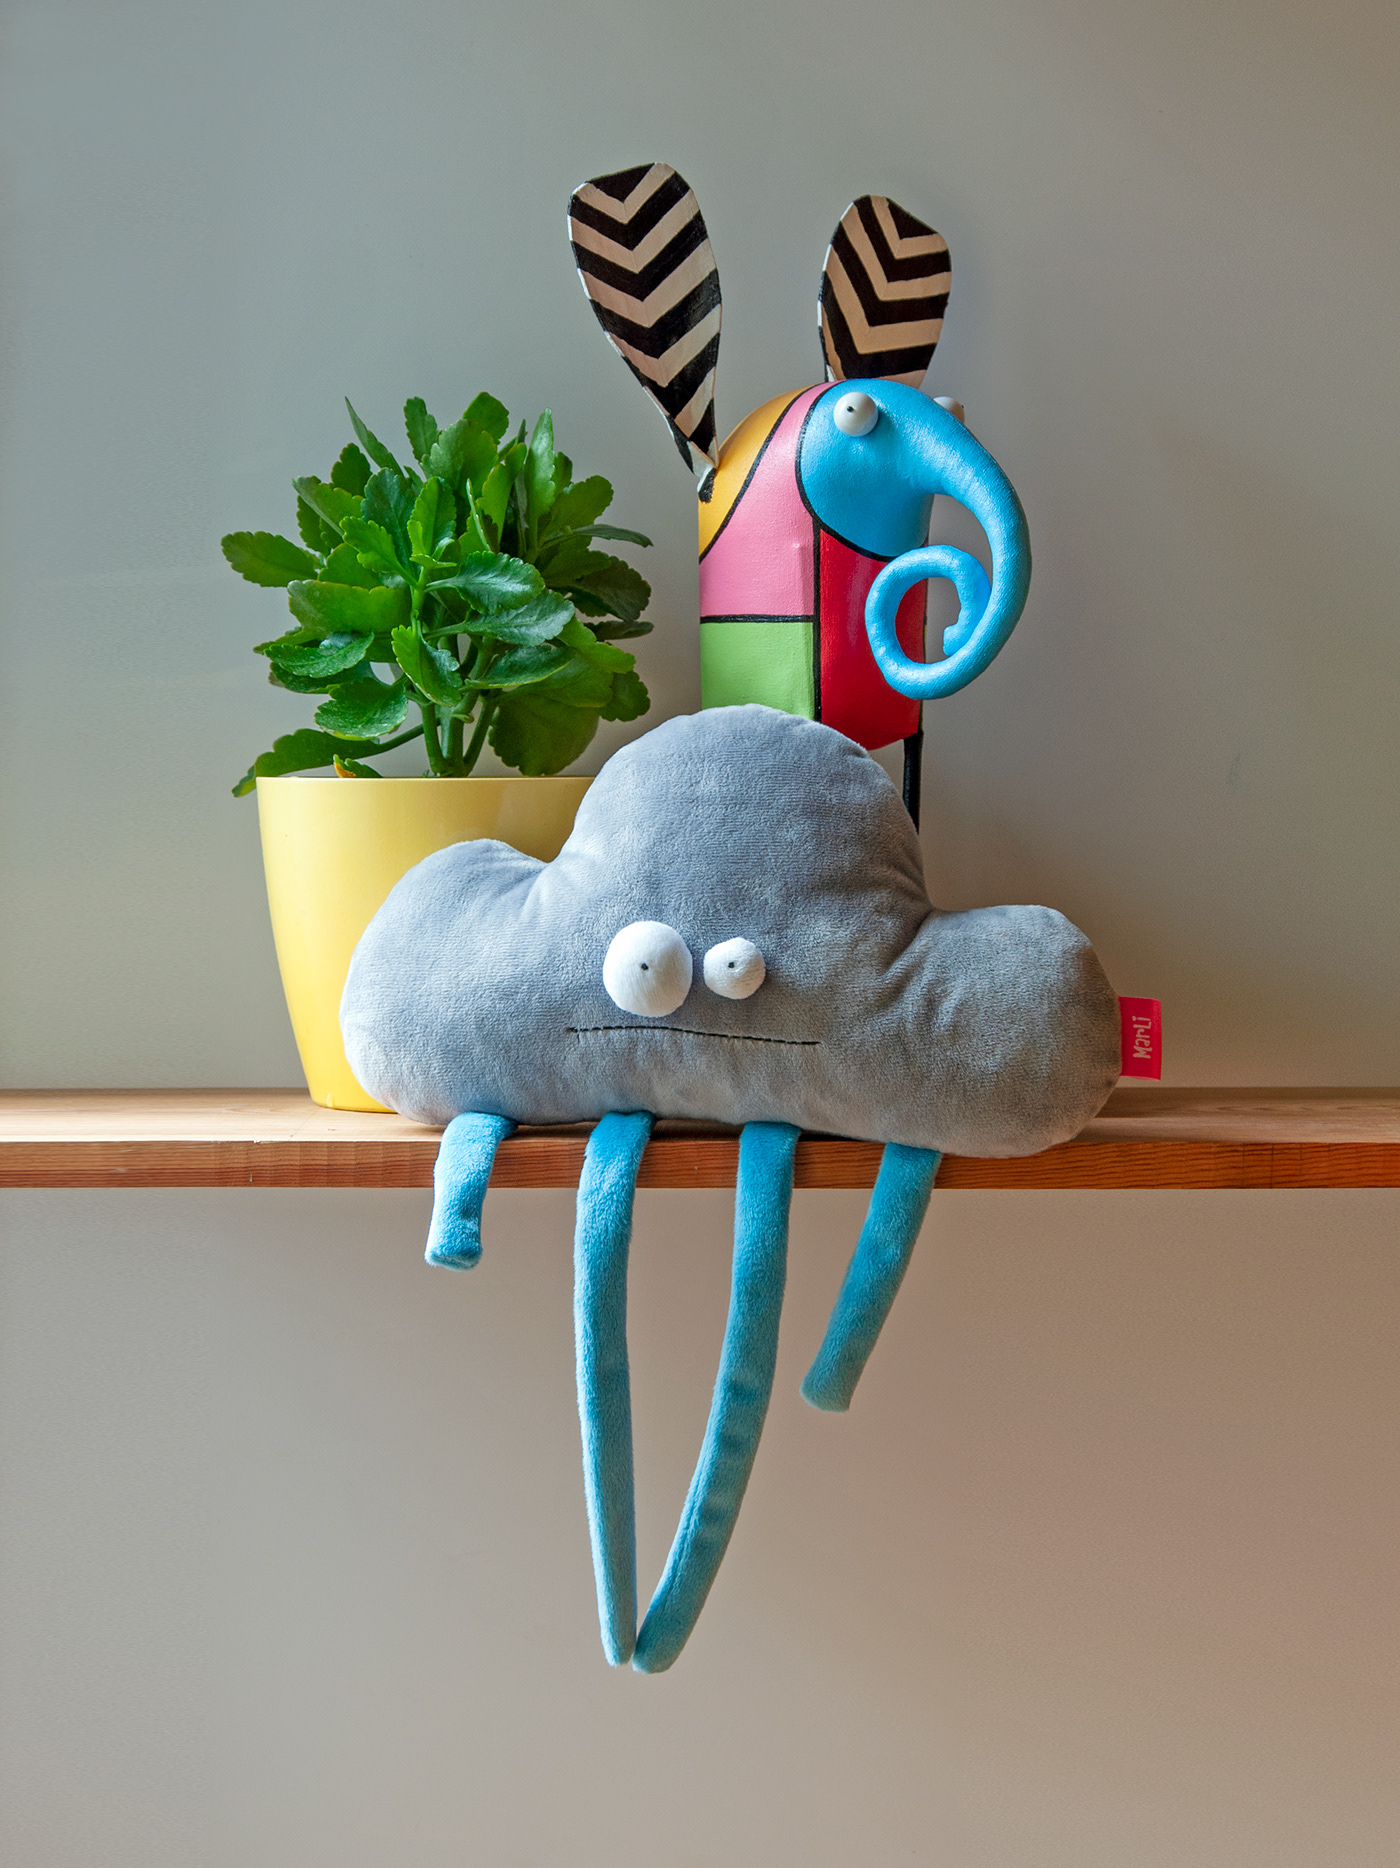 Character design  colorful concept art elephant home decor painting   Pop Art sculpture art textile toy